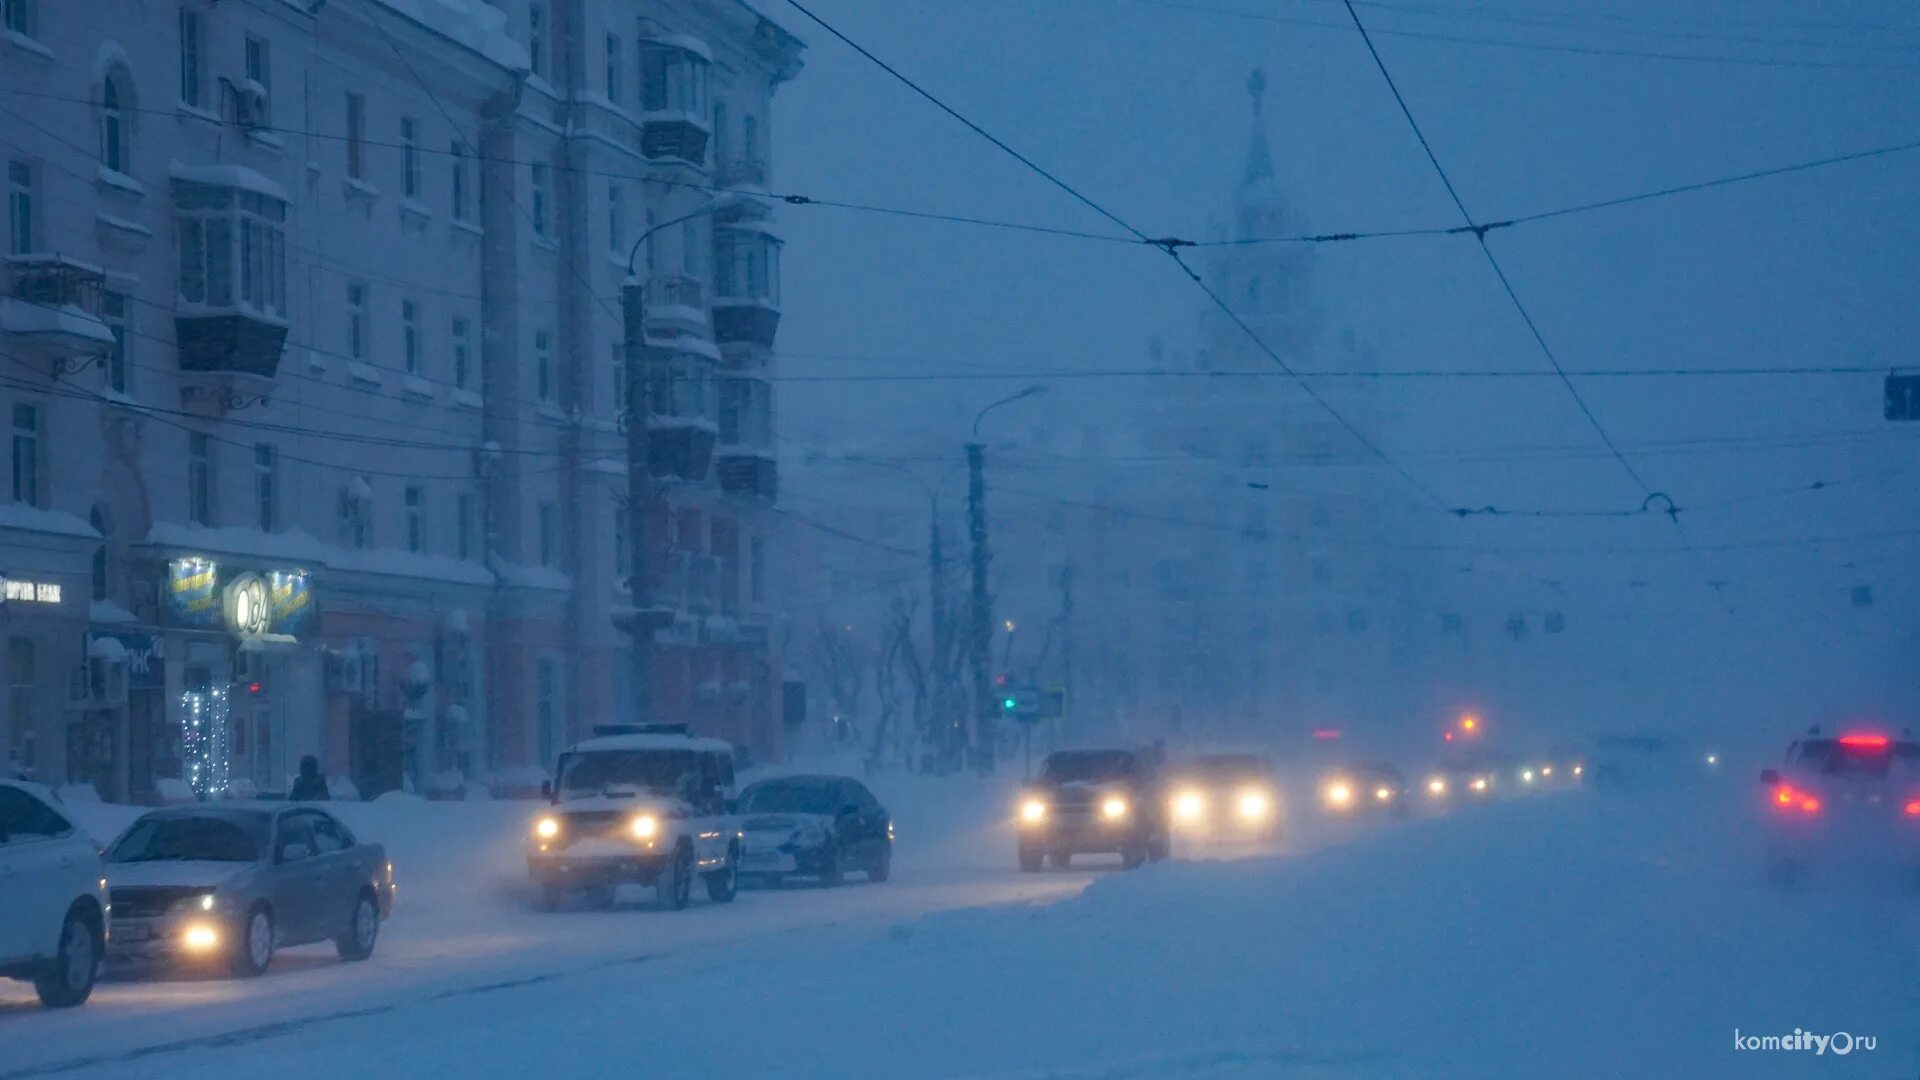 5 декабря 2014 г. Комсомольск на Амуре снегопад 2014. Комсомольск на Амуре снегопад. Комсомольск-на-Амуре снегопад 2013. Комсомольск на Амуре зима 2013.